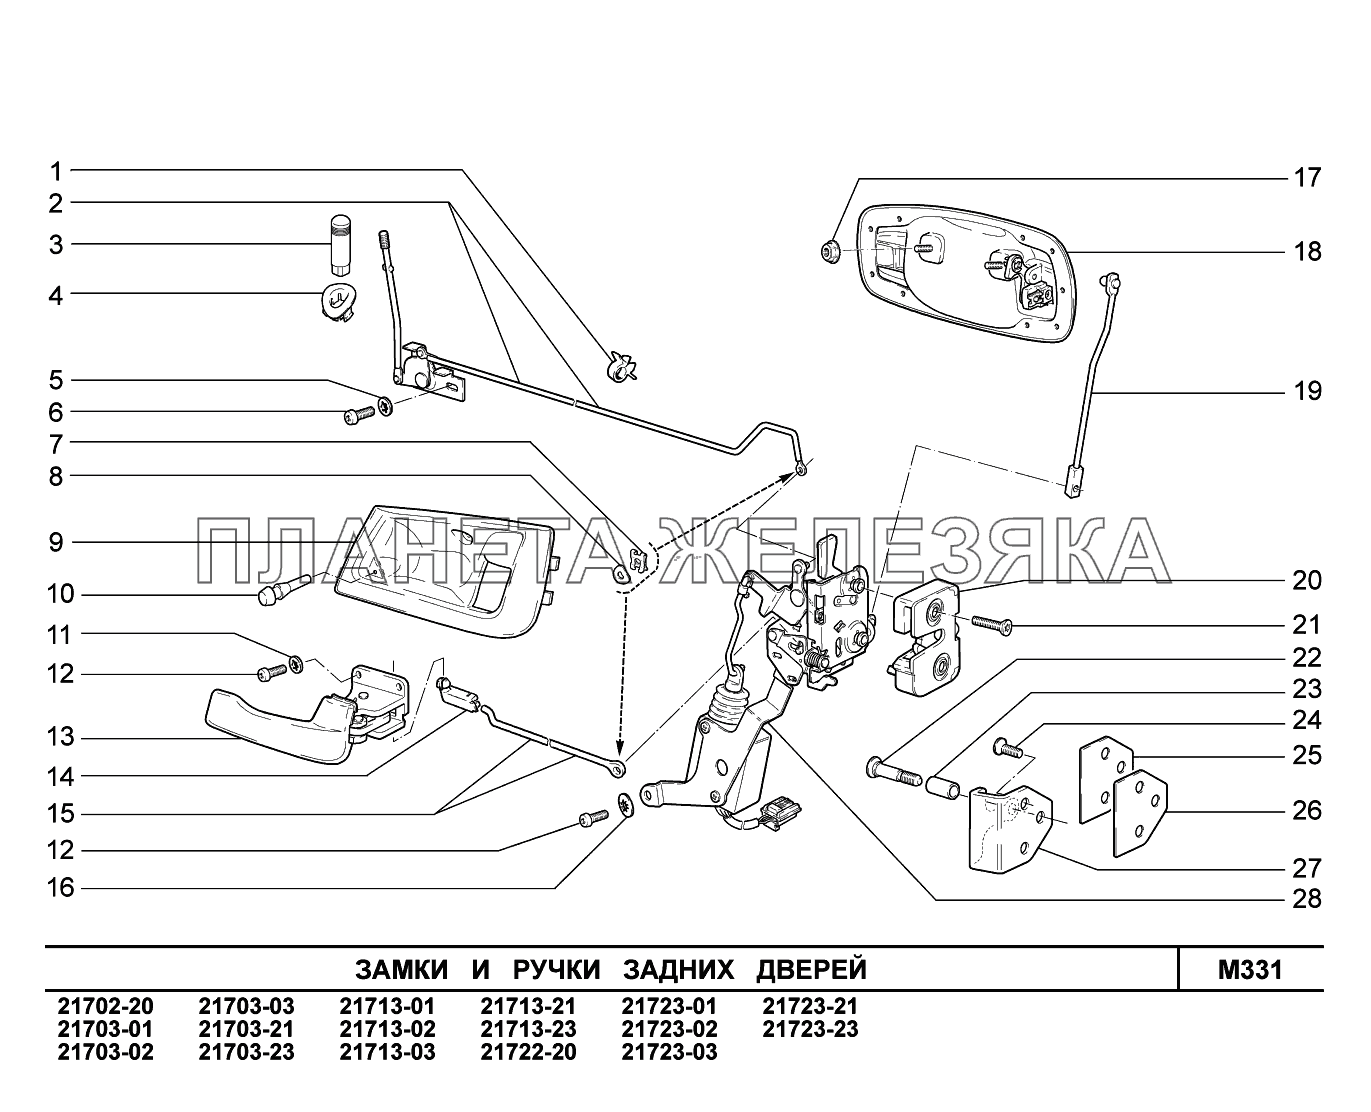 M331. Замки и ручки задних дверей ВАЗ-2170 